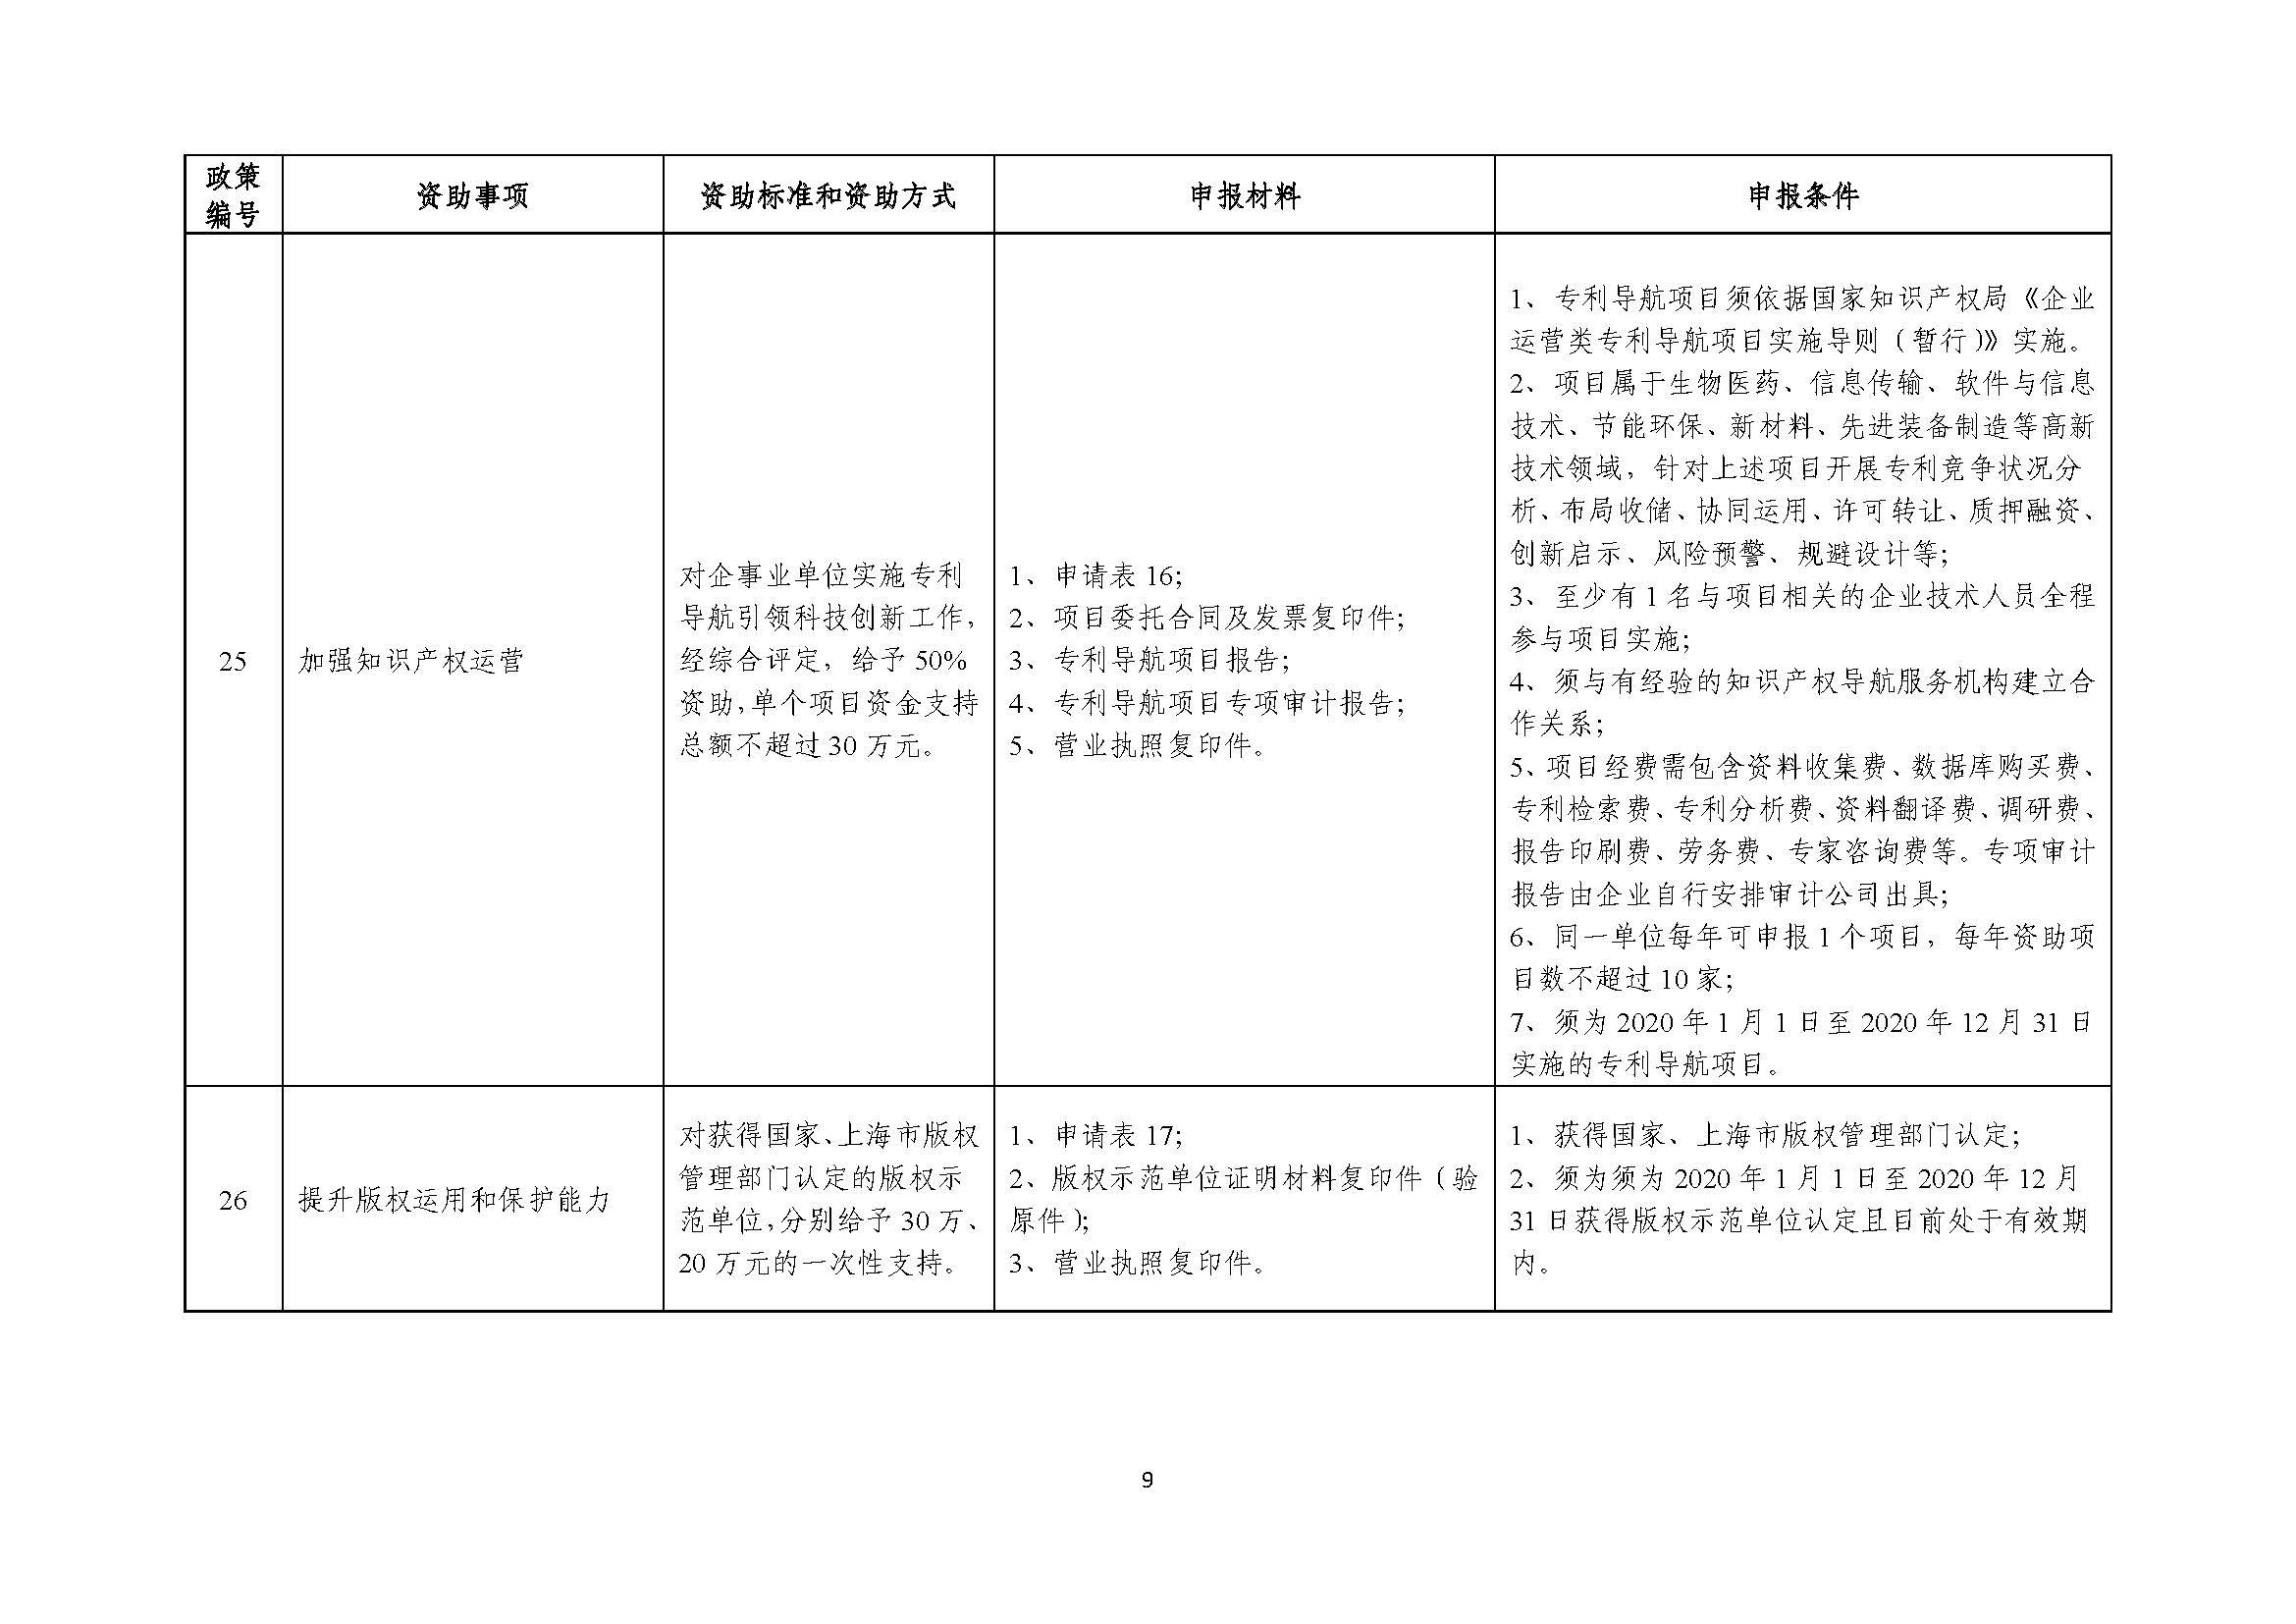 2021年张江科学城专项政策申报指南_页面_09.jpg